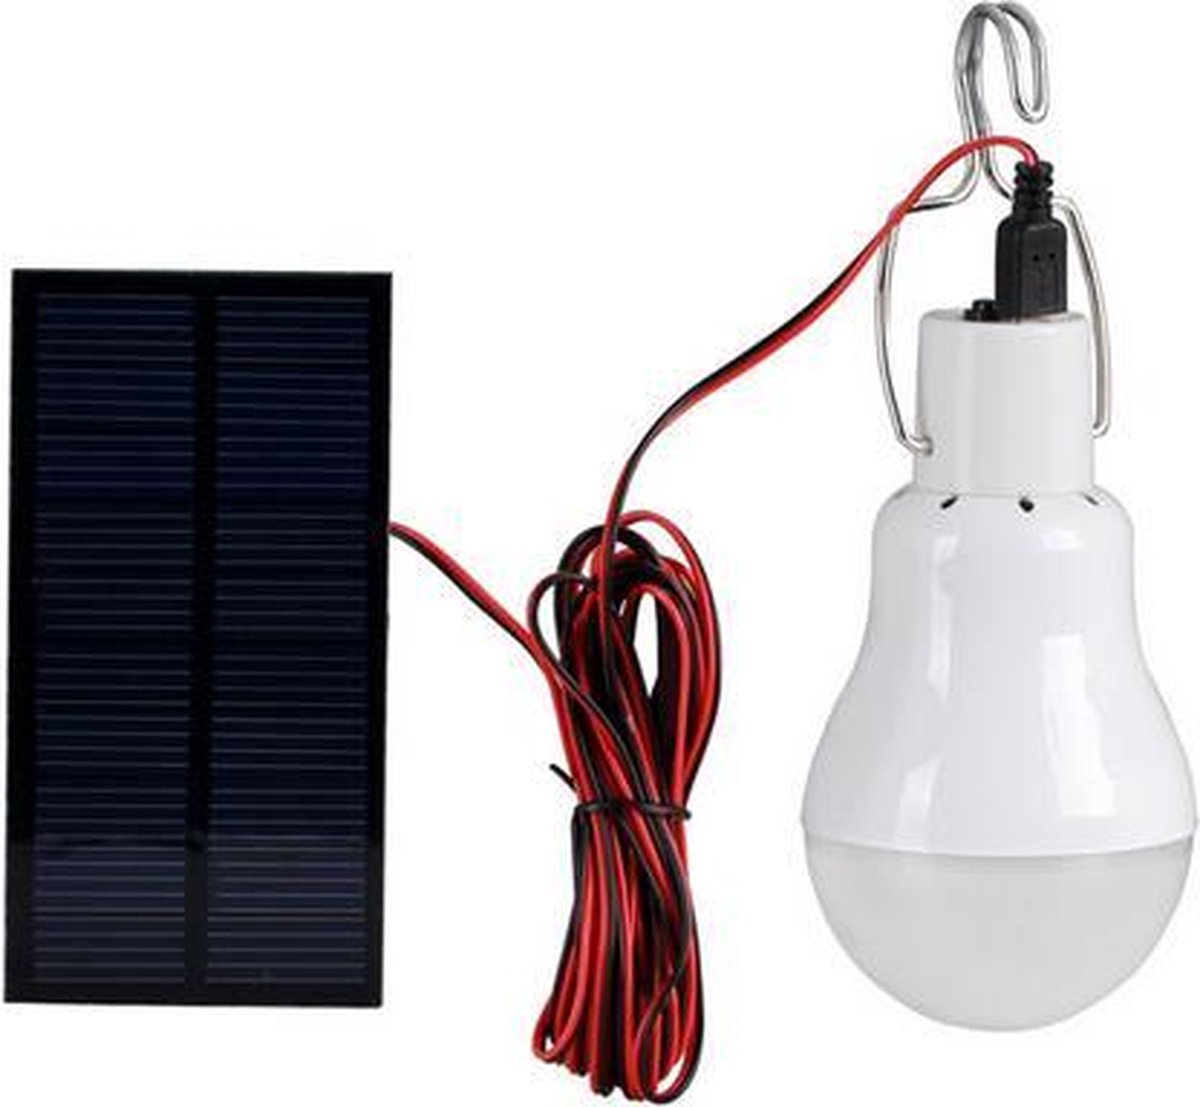 bol.com | LED lamp voor in de tent met zonnepaneel / Camping kamperen /  Werkt op accu / Solar